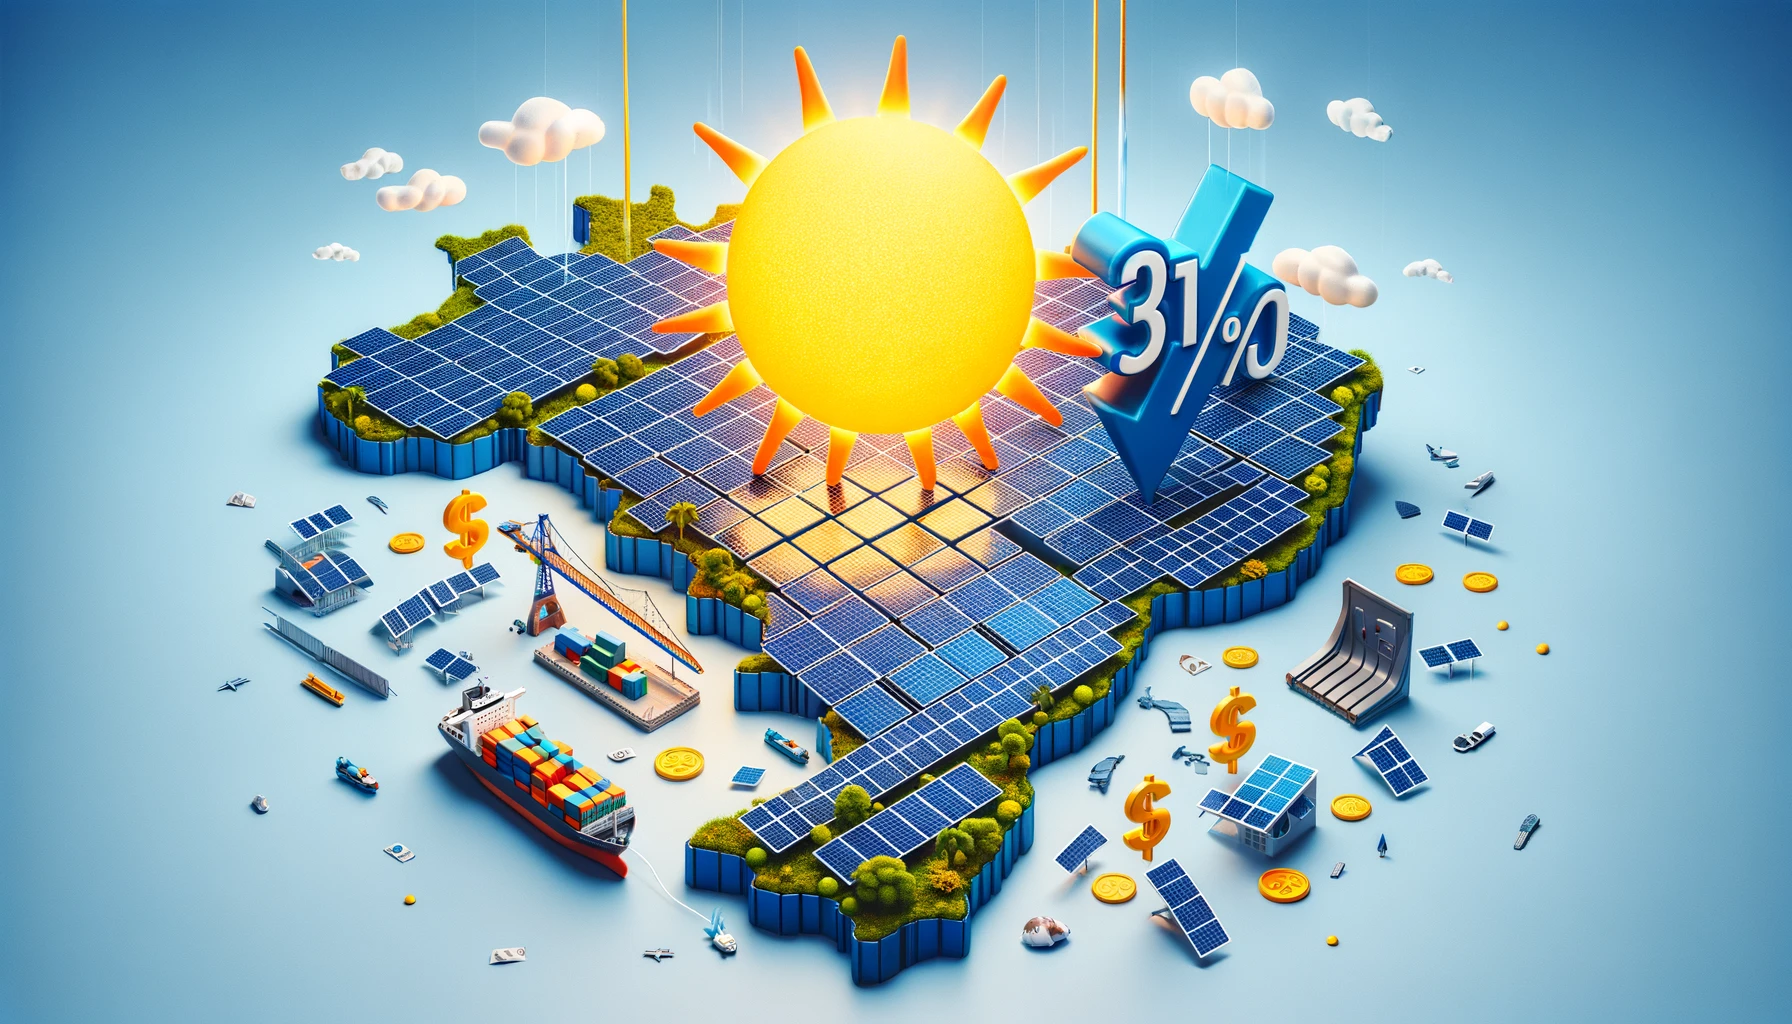 Energia solar no Brasil fica 31% mais barata em um ano, aponta Solfácil